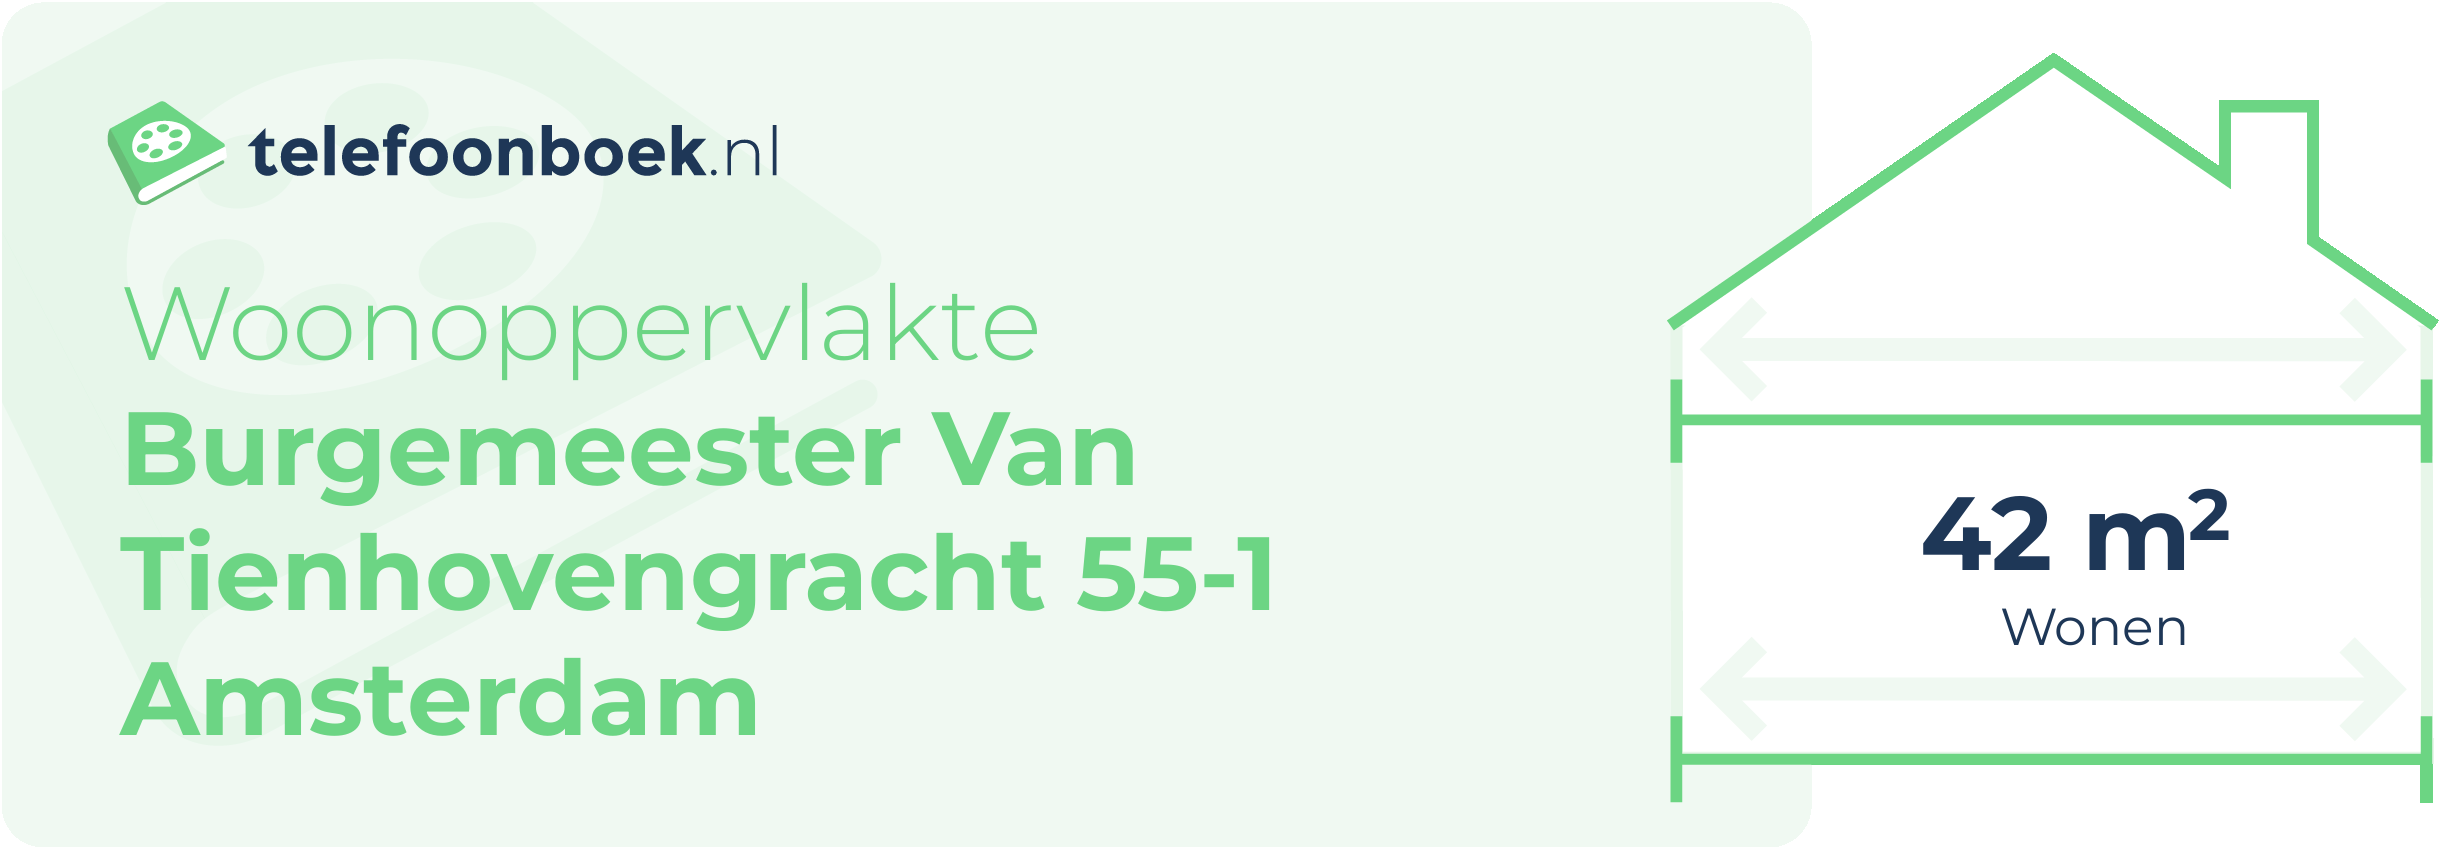 Woonoppervlakte Burgemeester Van Tienhovengracht 55-1 Amsterdam